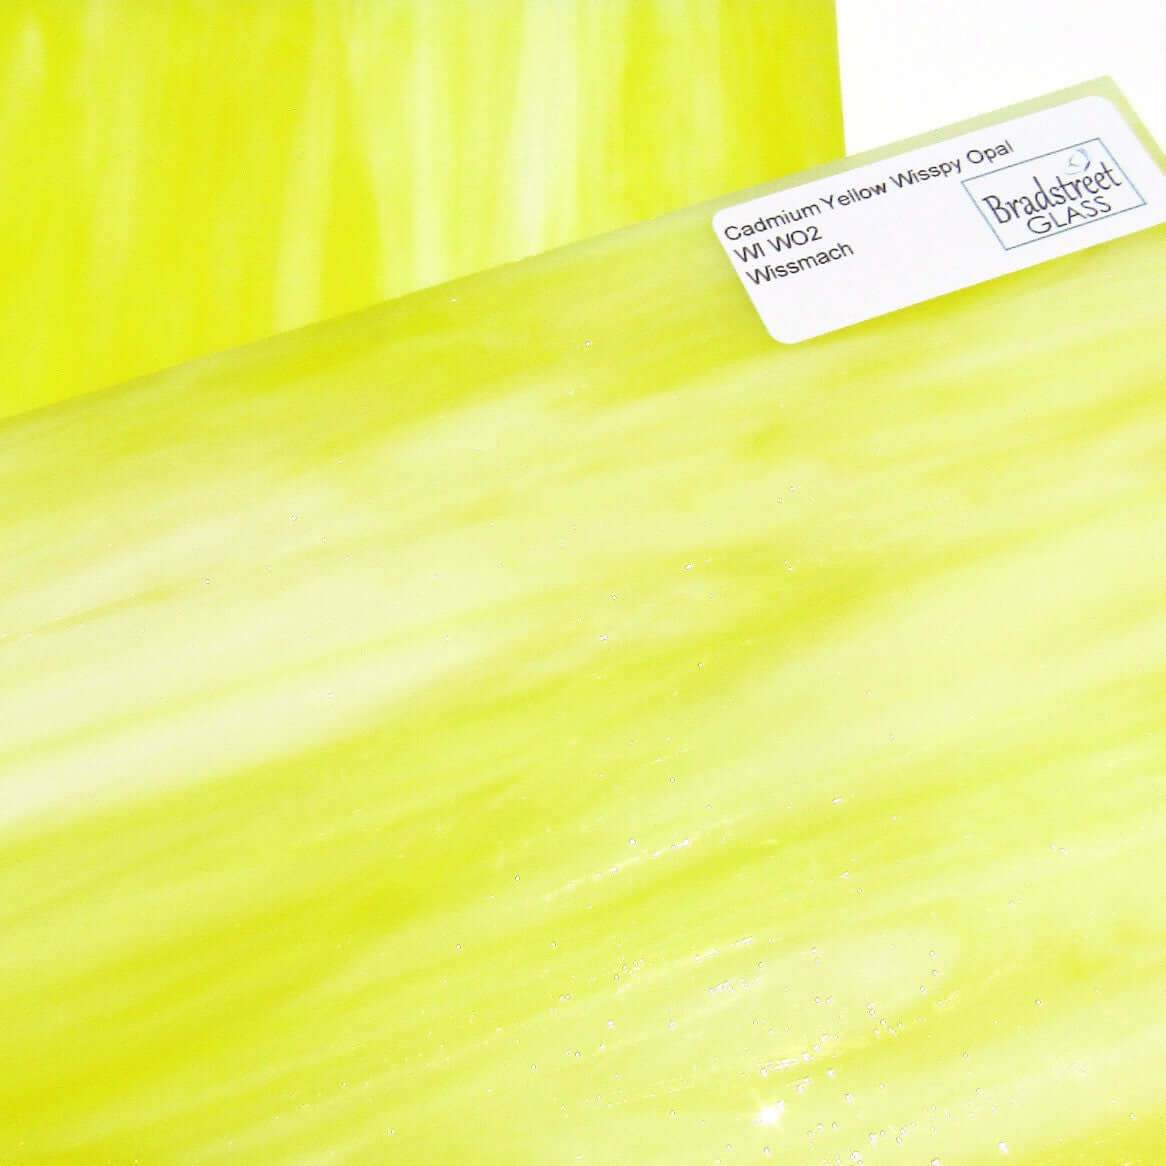 Wissmach Cadmium Yellow Wisspy Opal 8x8 Stained Glass Sheet WI WO2 